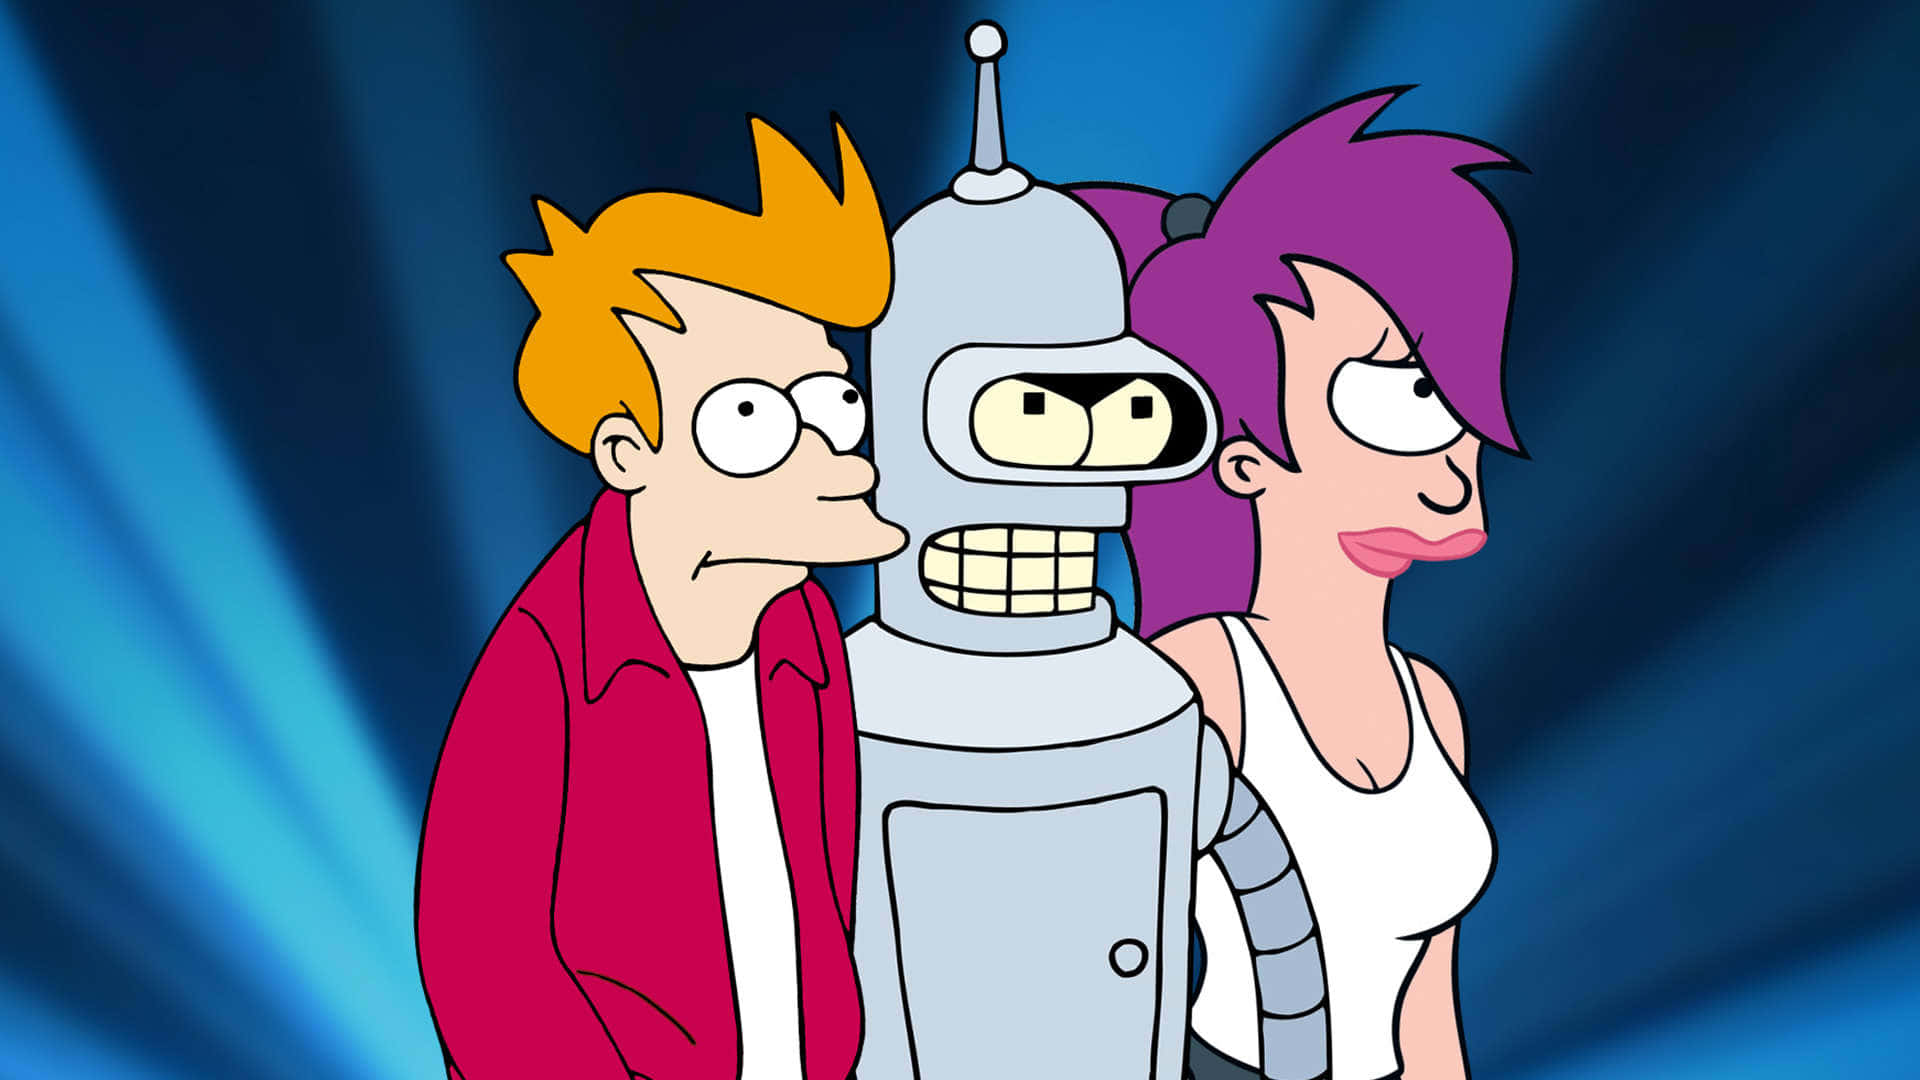 Professorfarnsworth Transportiert Fry Und Bender Durch Den Weltraum In Futurama.